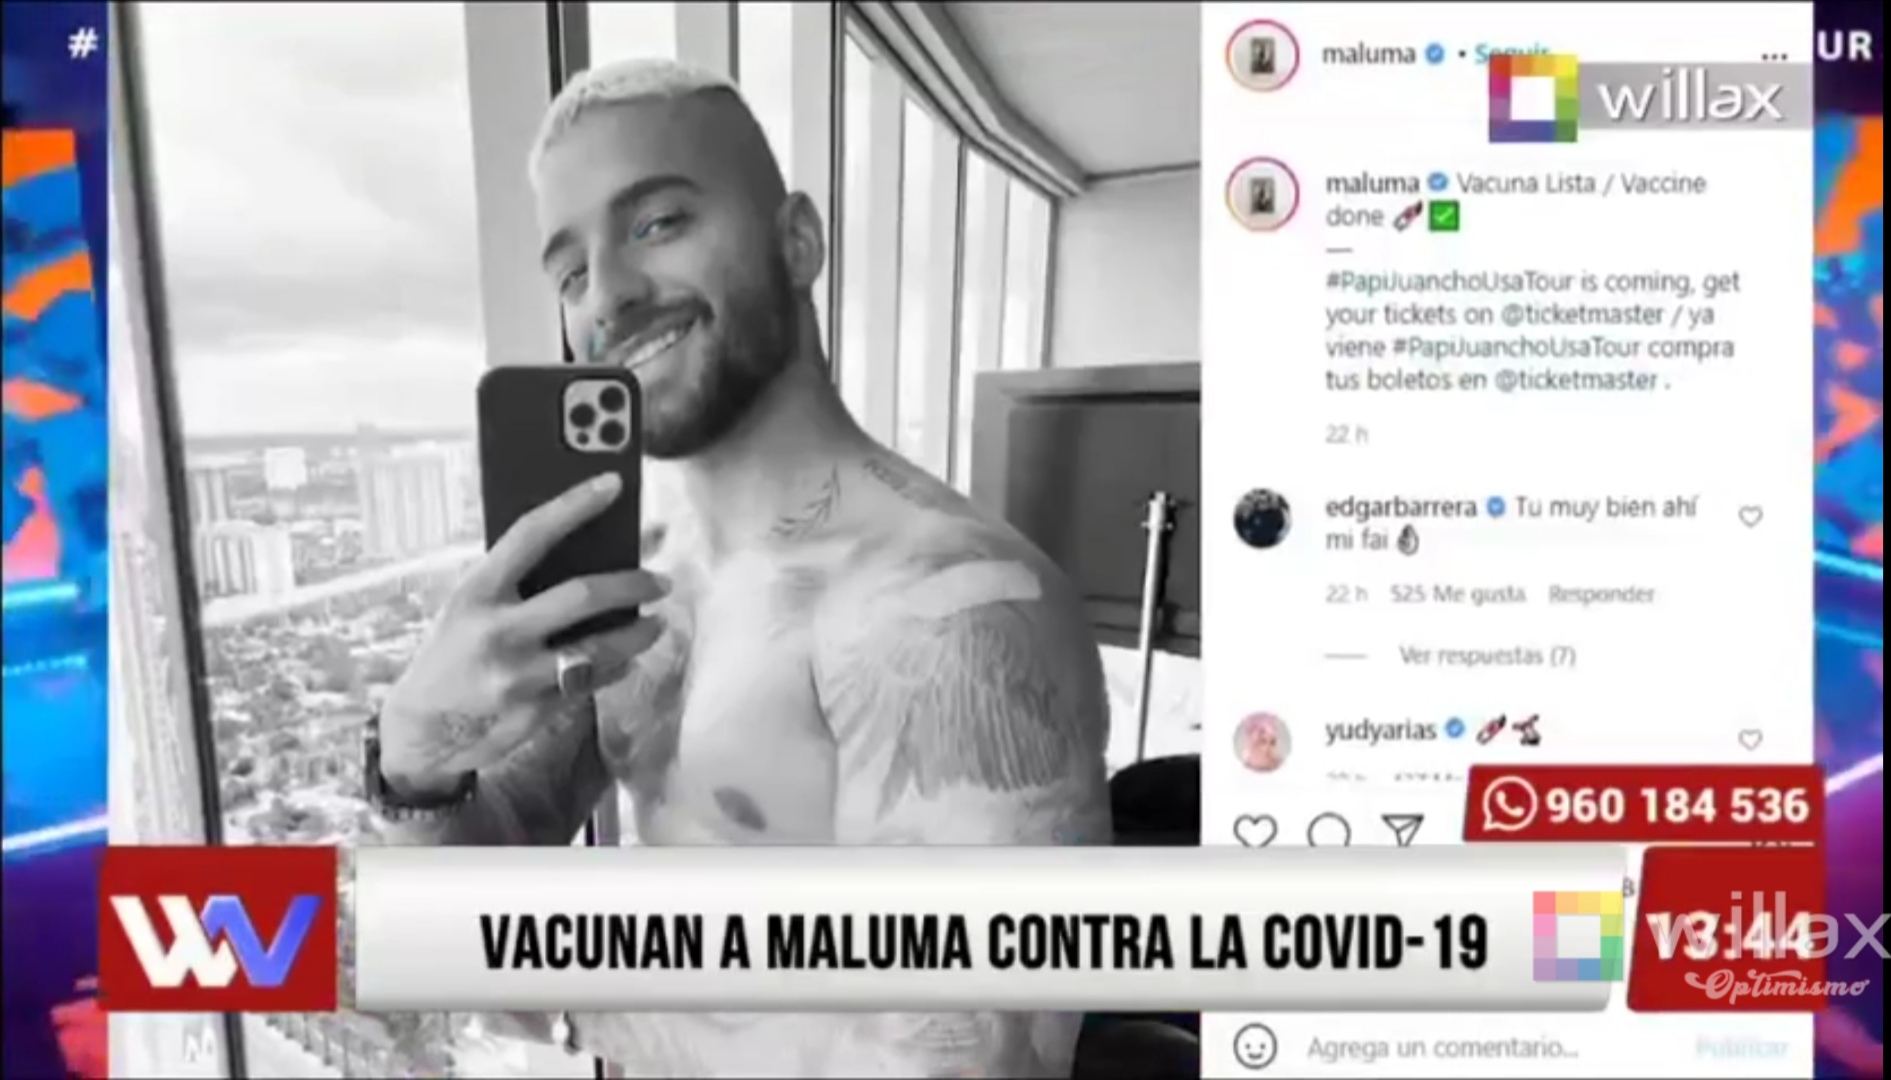 Maluma anuncia que recibió la vacuna contra la COVID-19